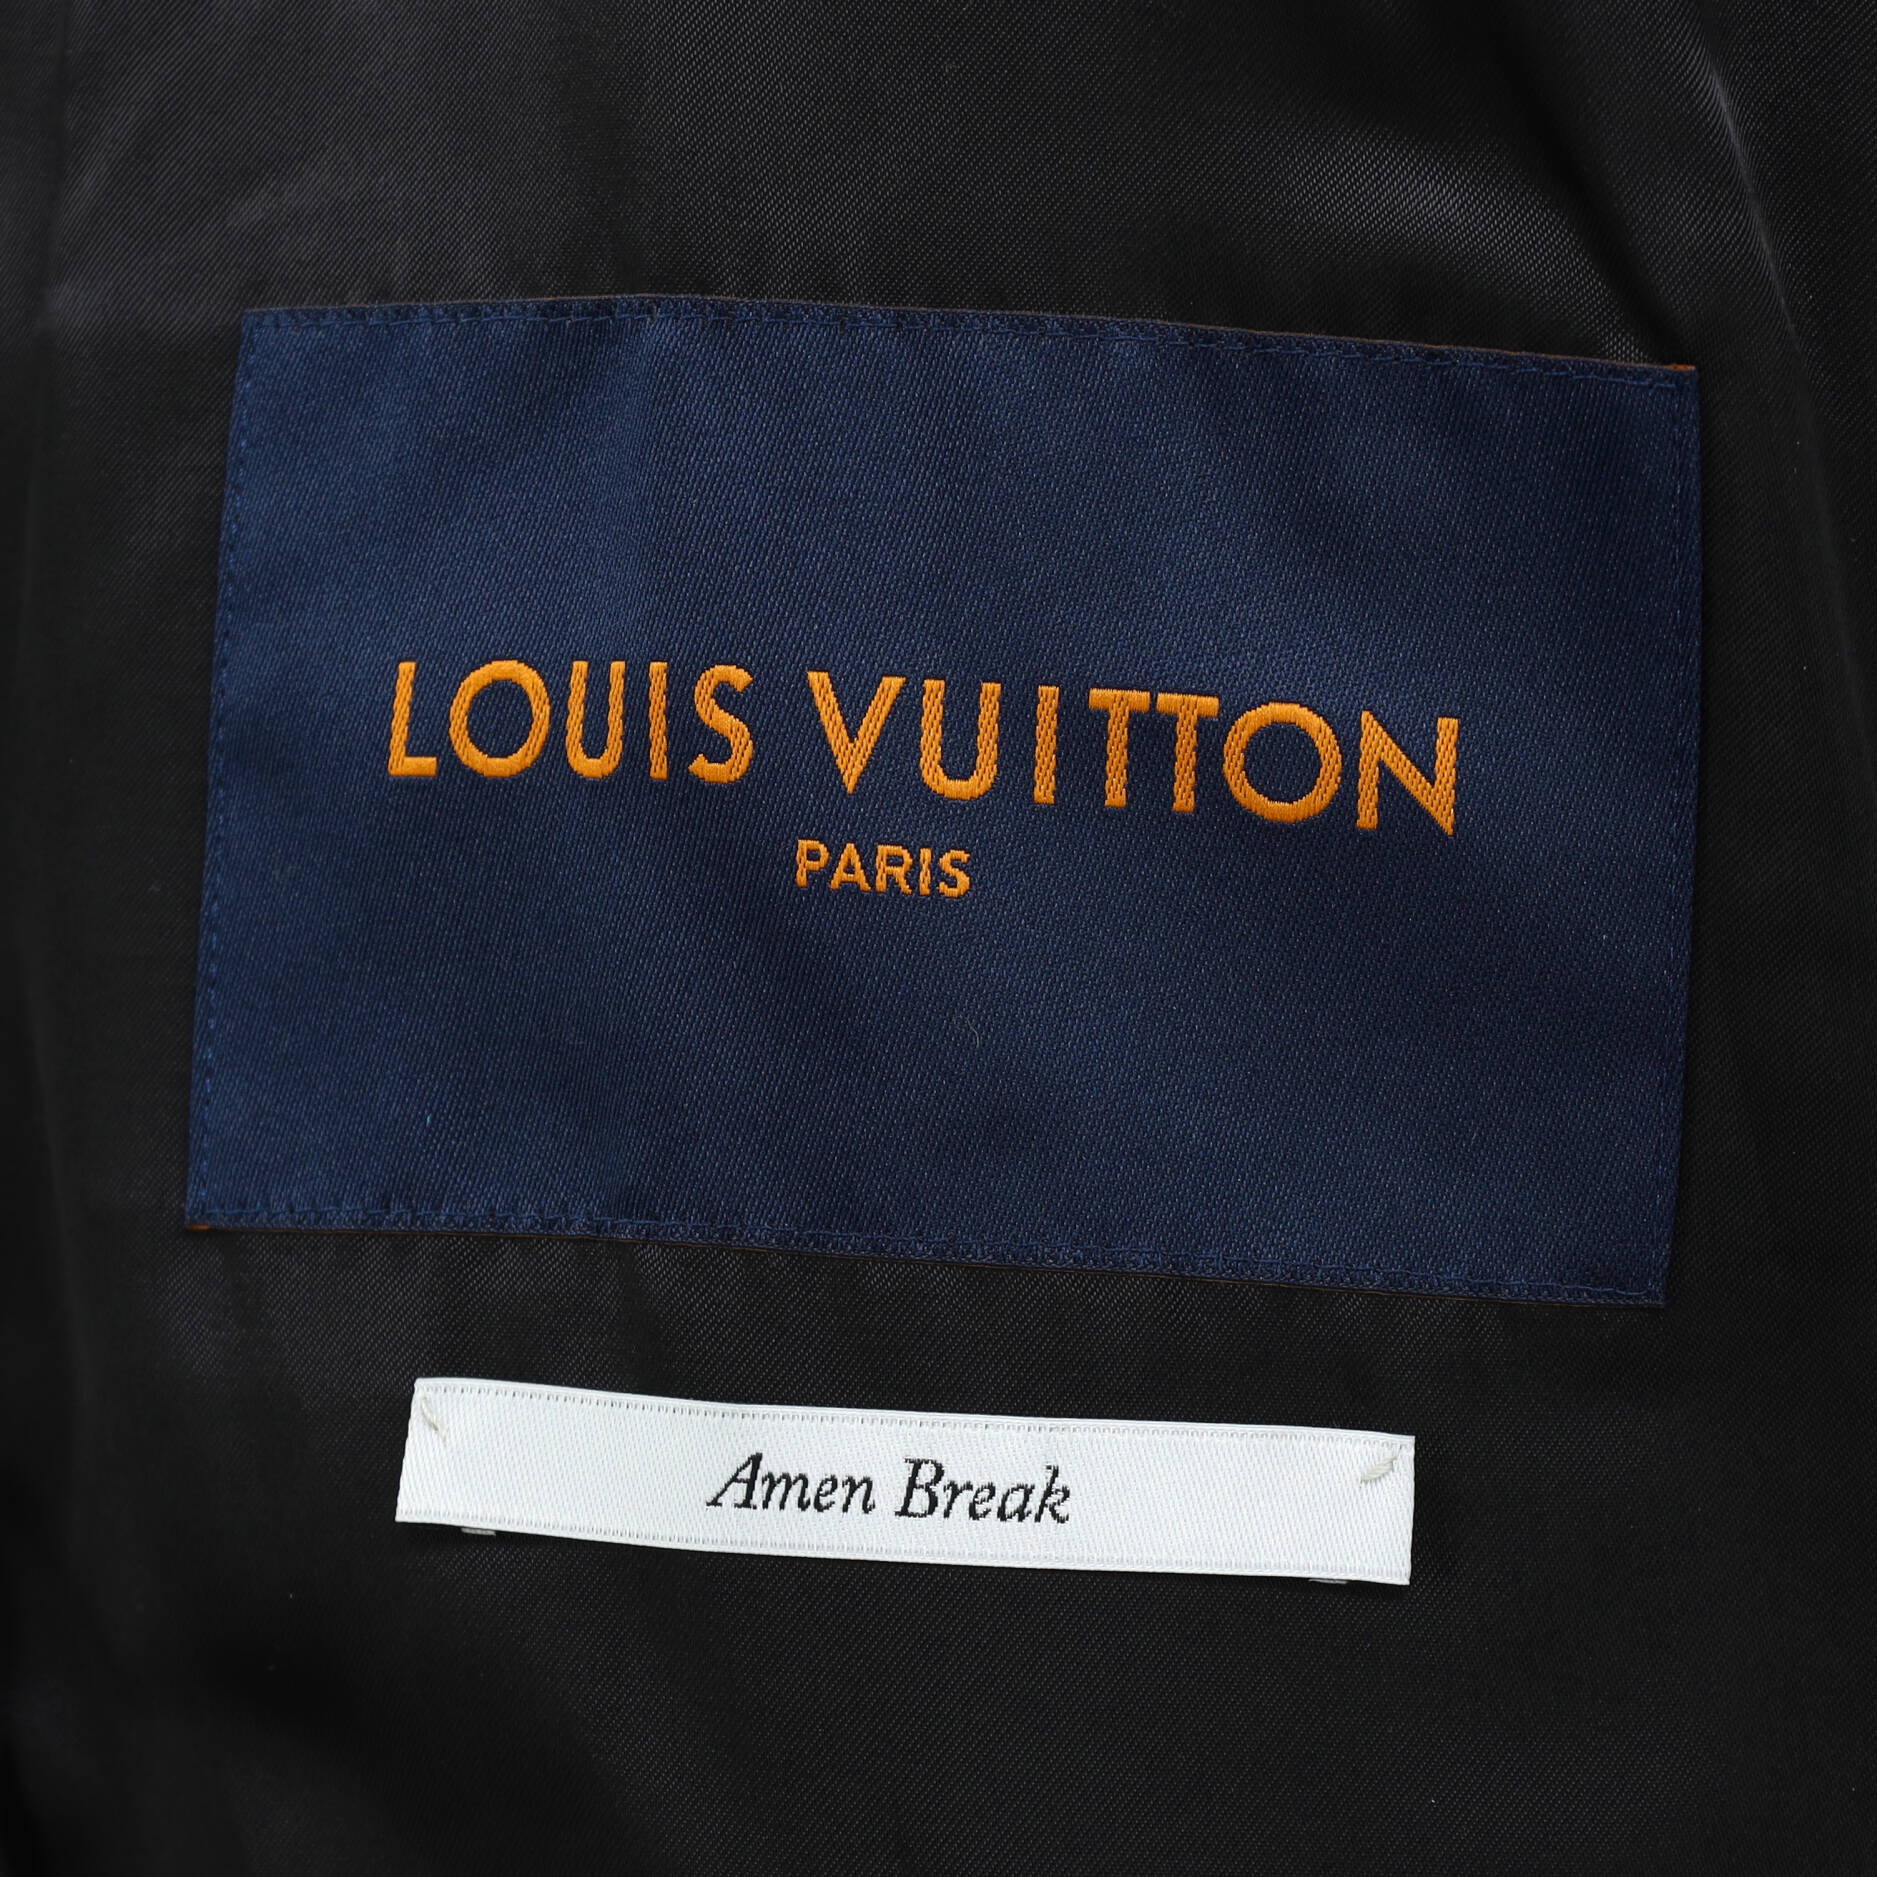 Louis Vuitton Monogram Flower Patchwork Leather Blouson